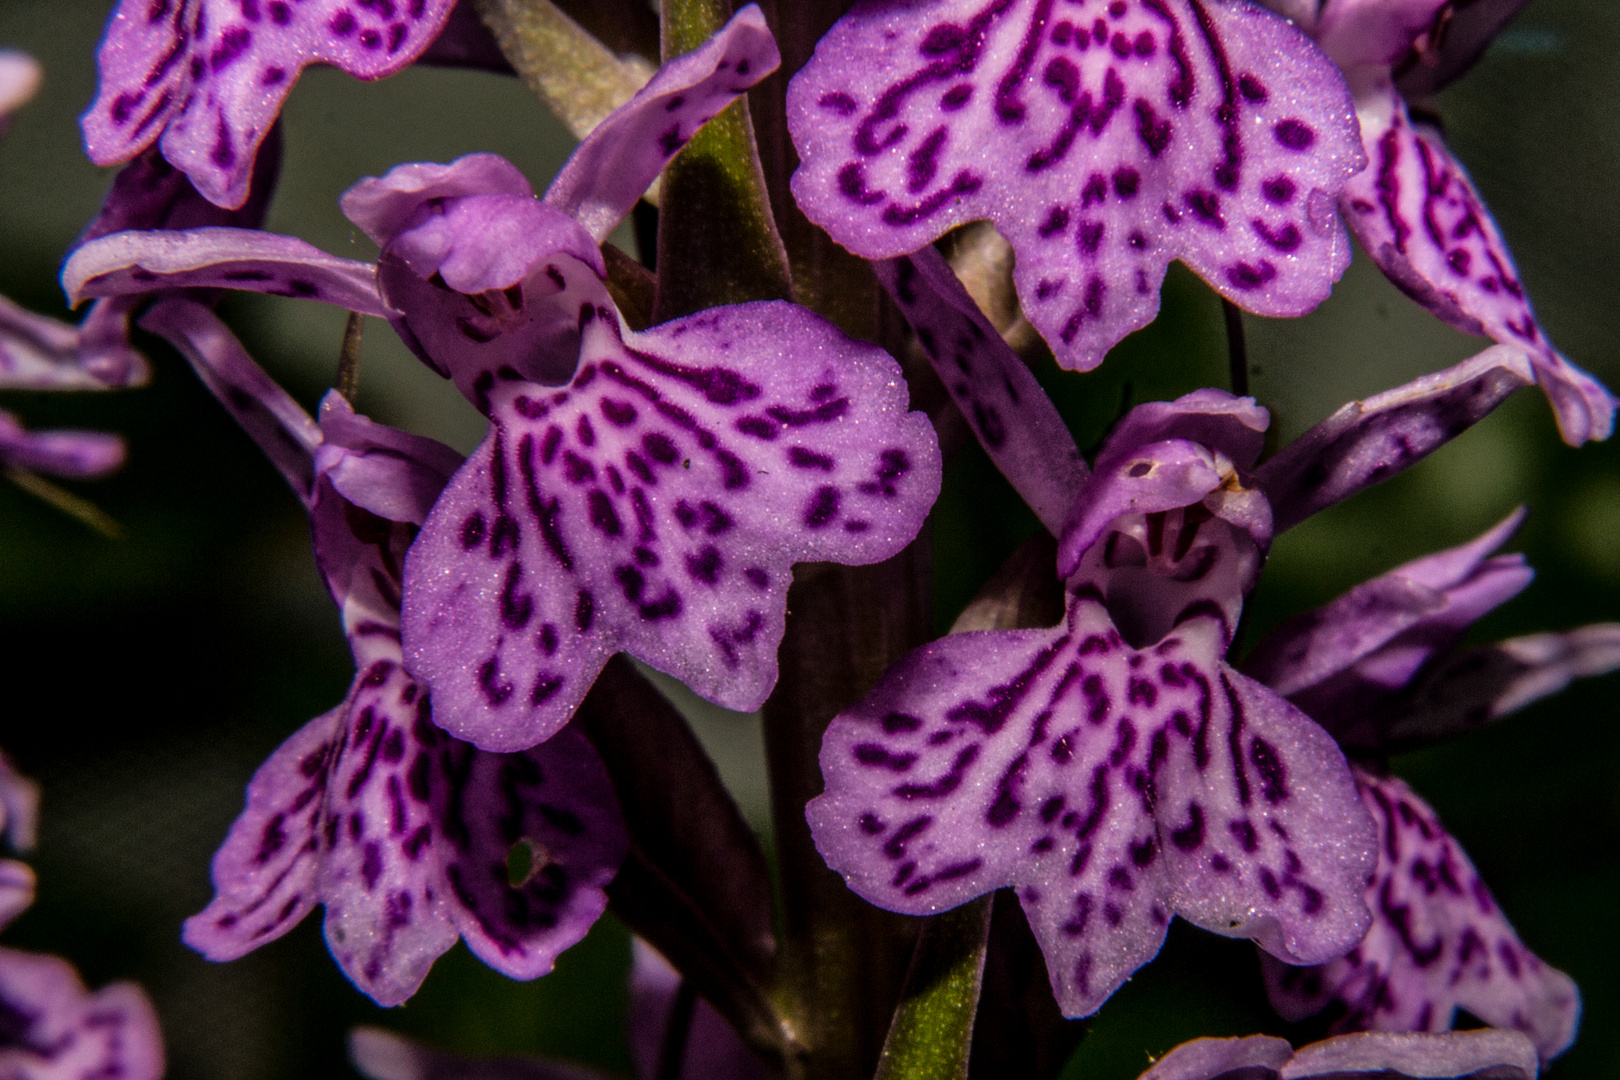 Dactylorhiza maculata, european orchid species.